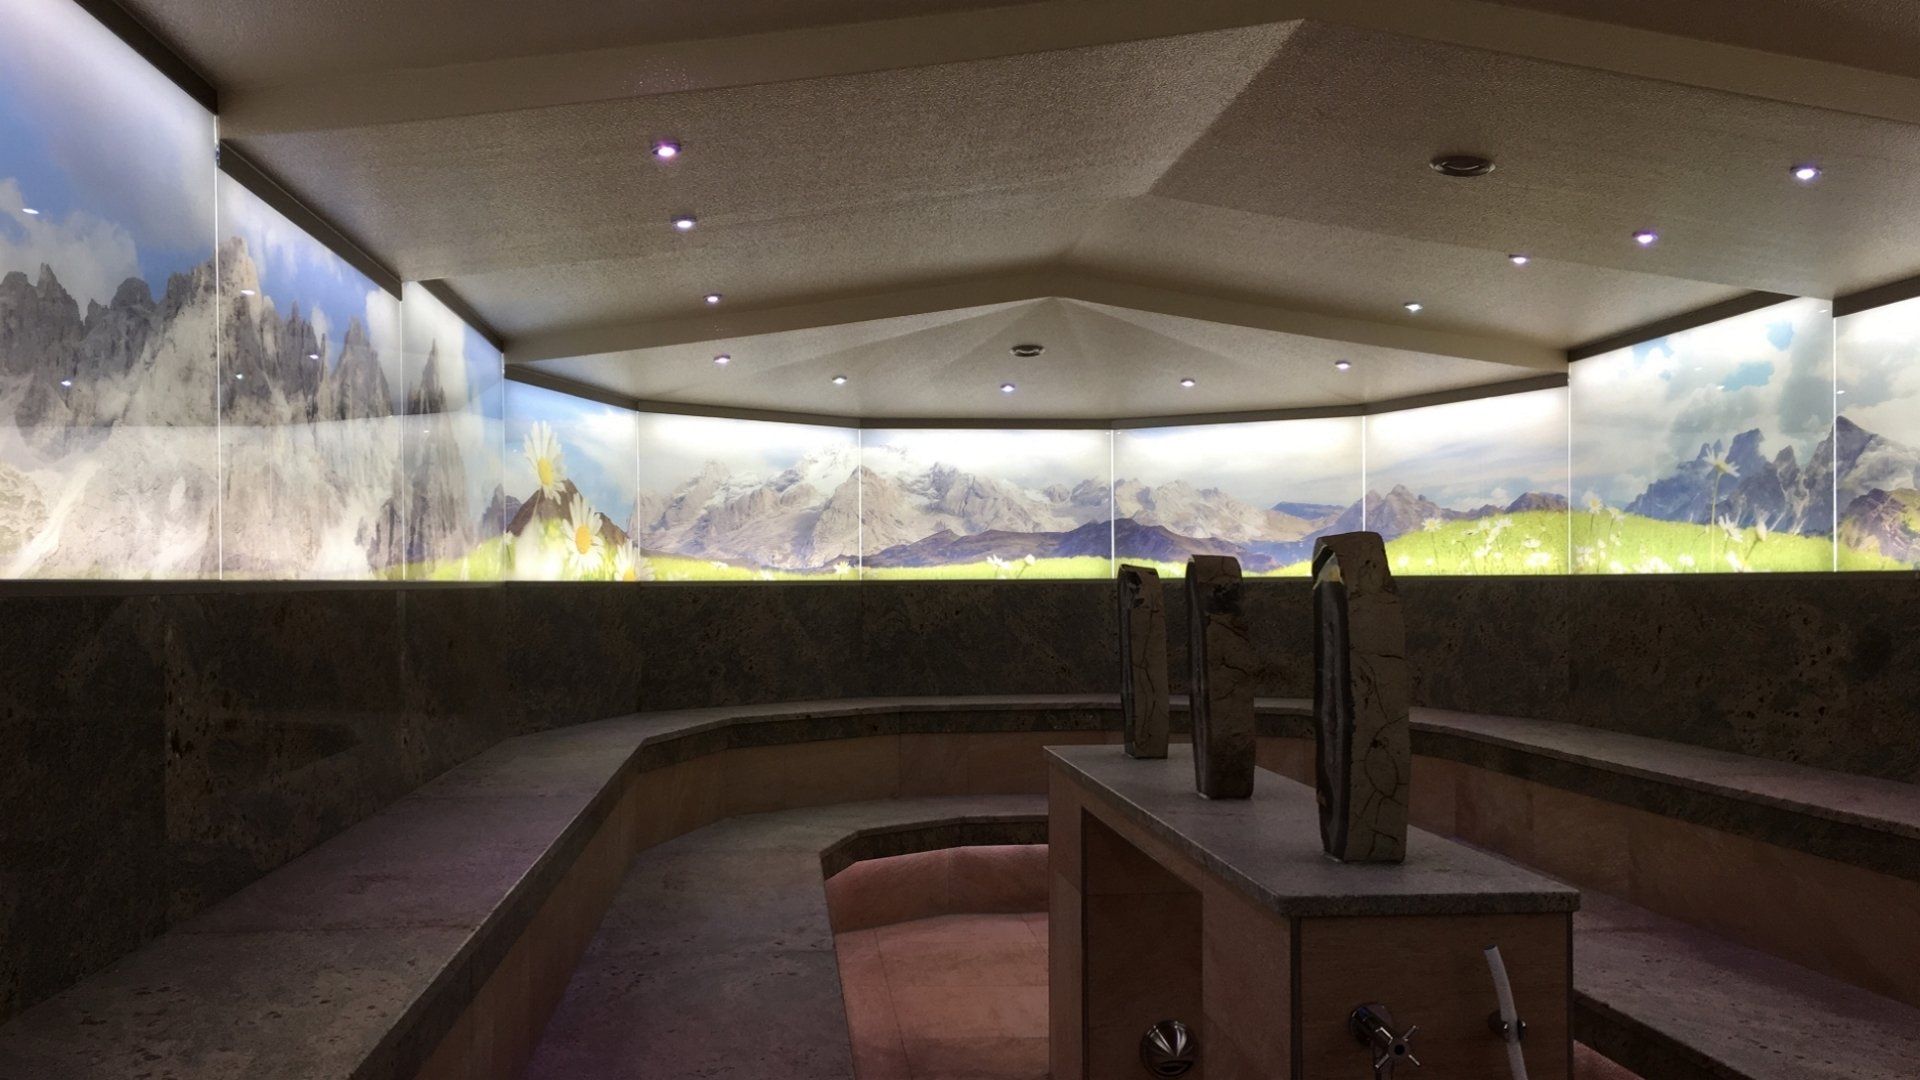 Eröffnung: Neues Alpen-Dampfbad für die Ischgl-Saunawelt des 